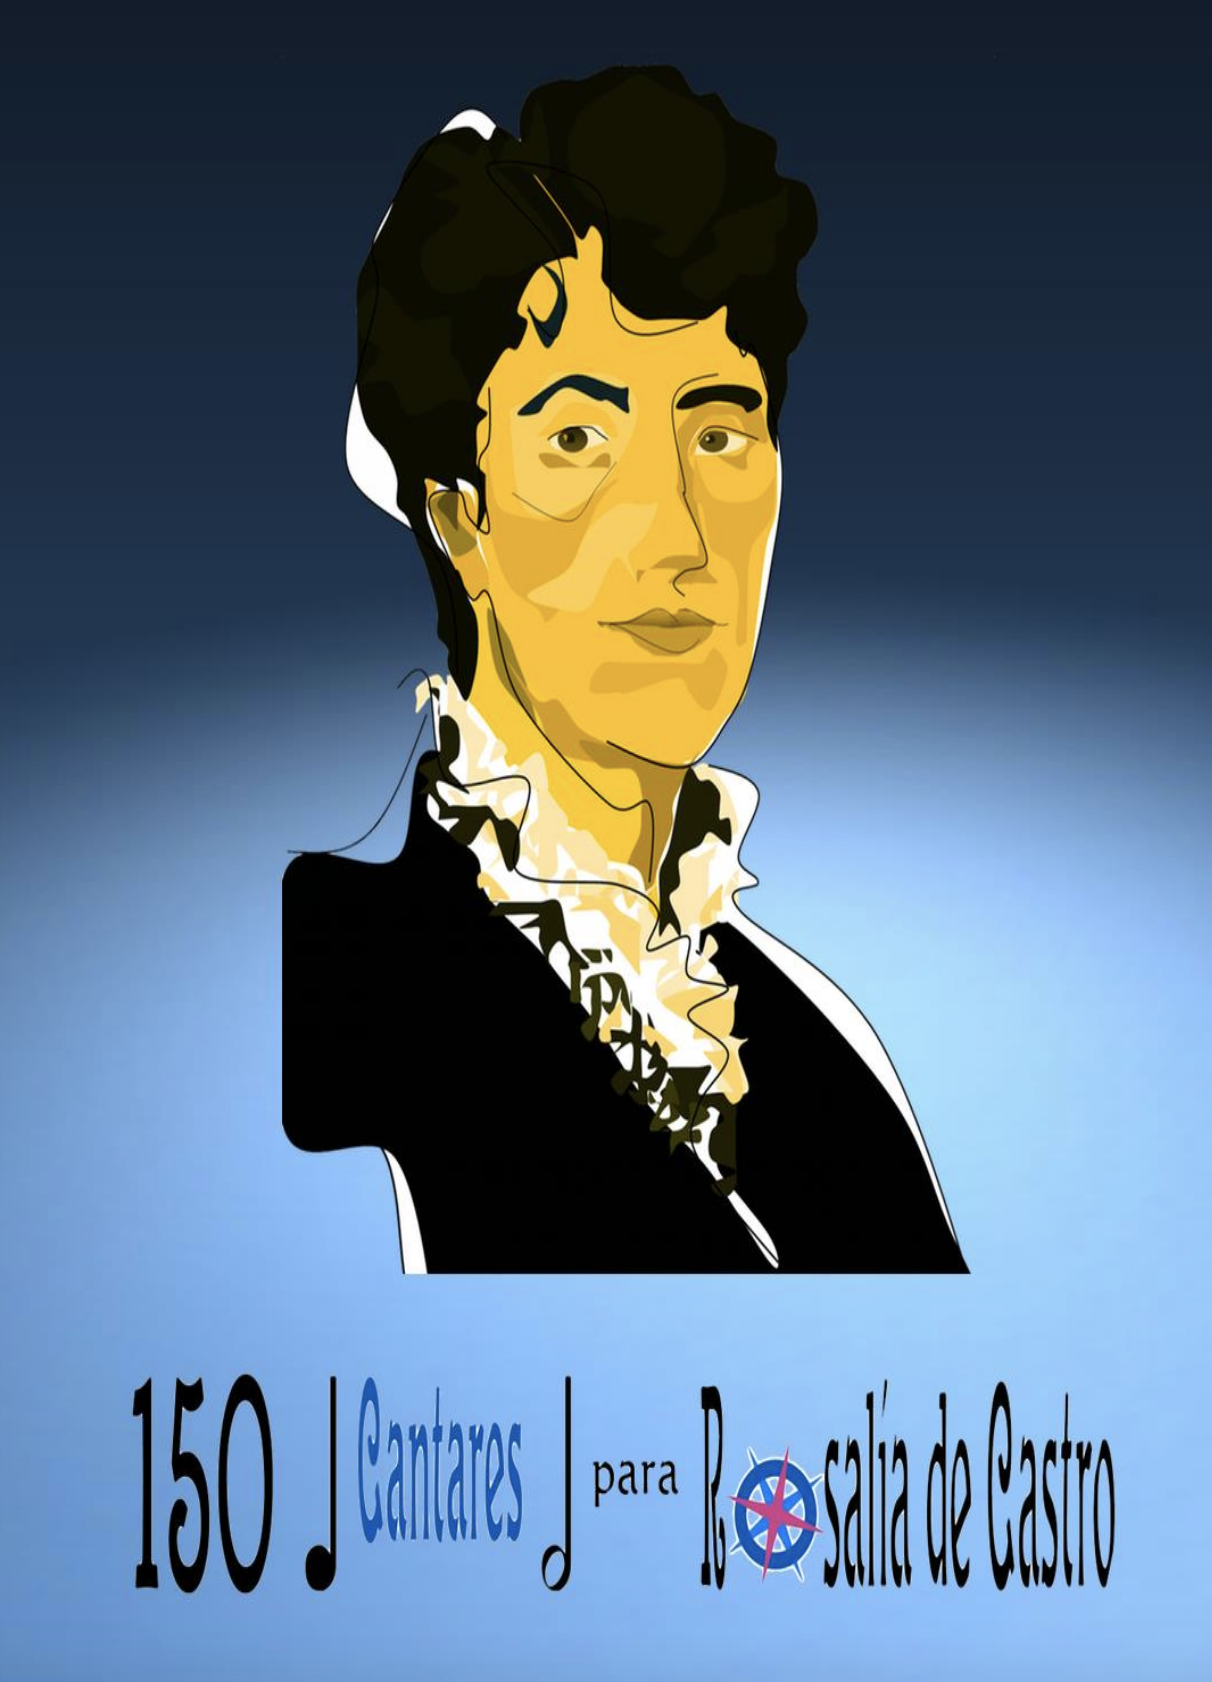 150 Cantares para Rosalía de Castro